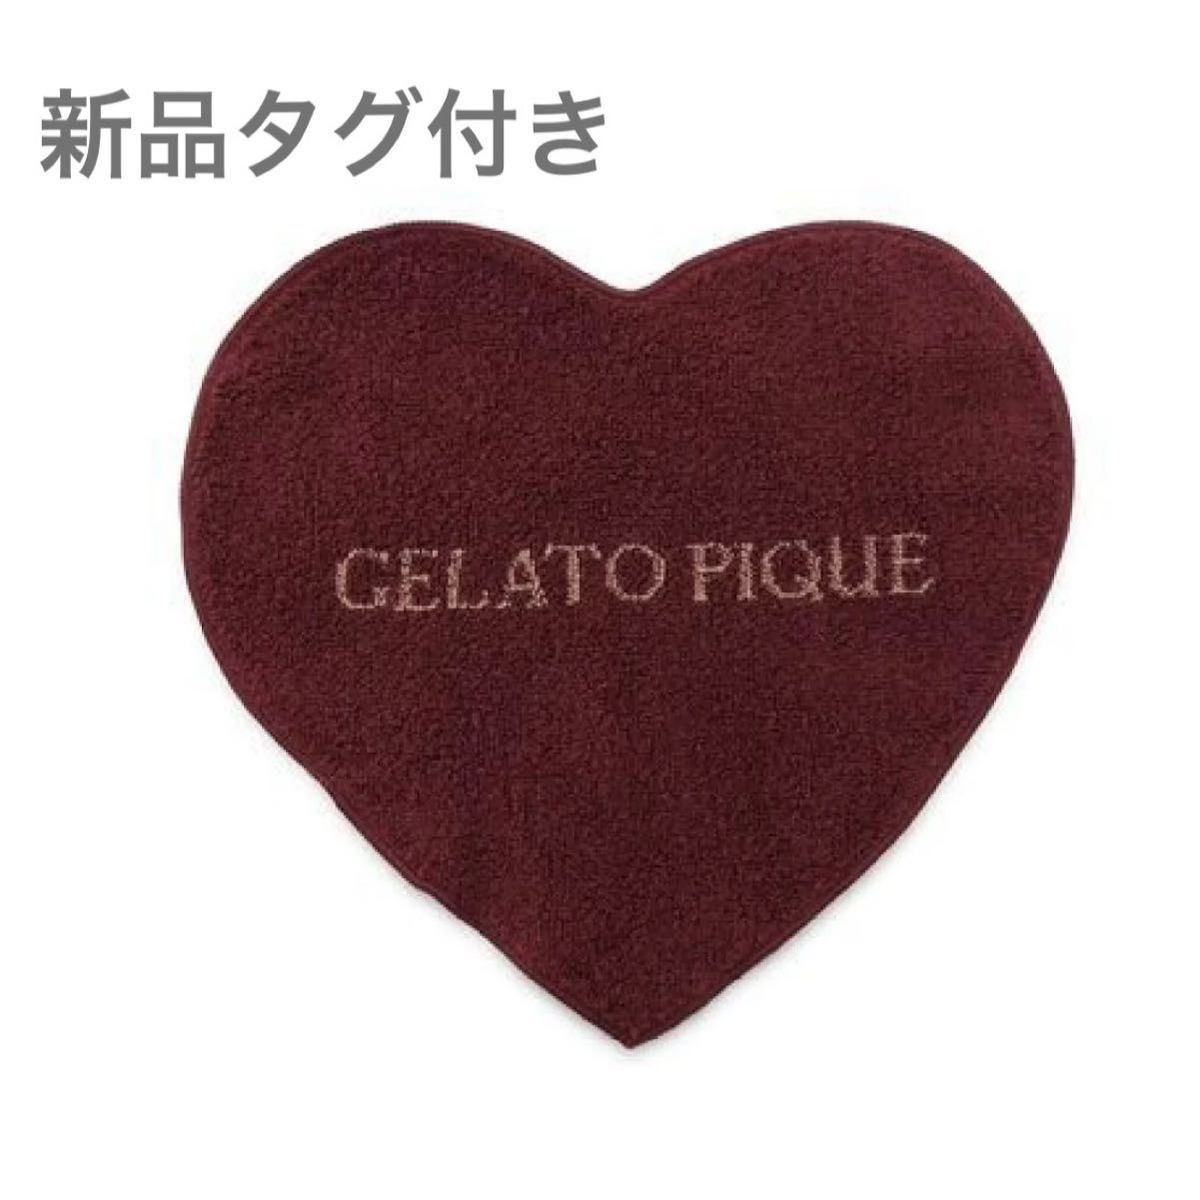 【新品タグ付き】gelato pique ハートハンドタオル